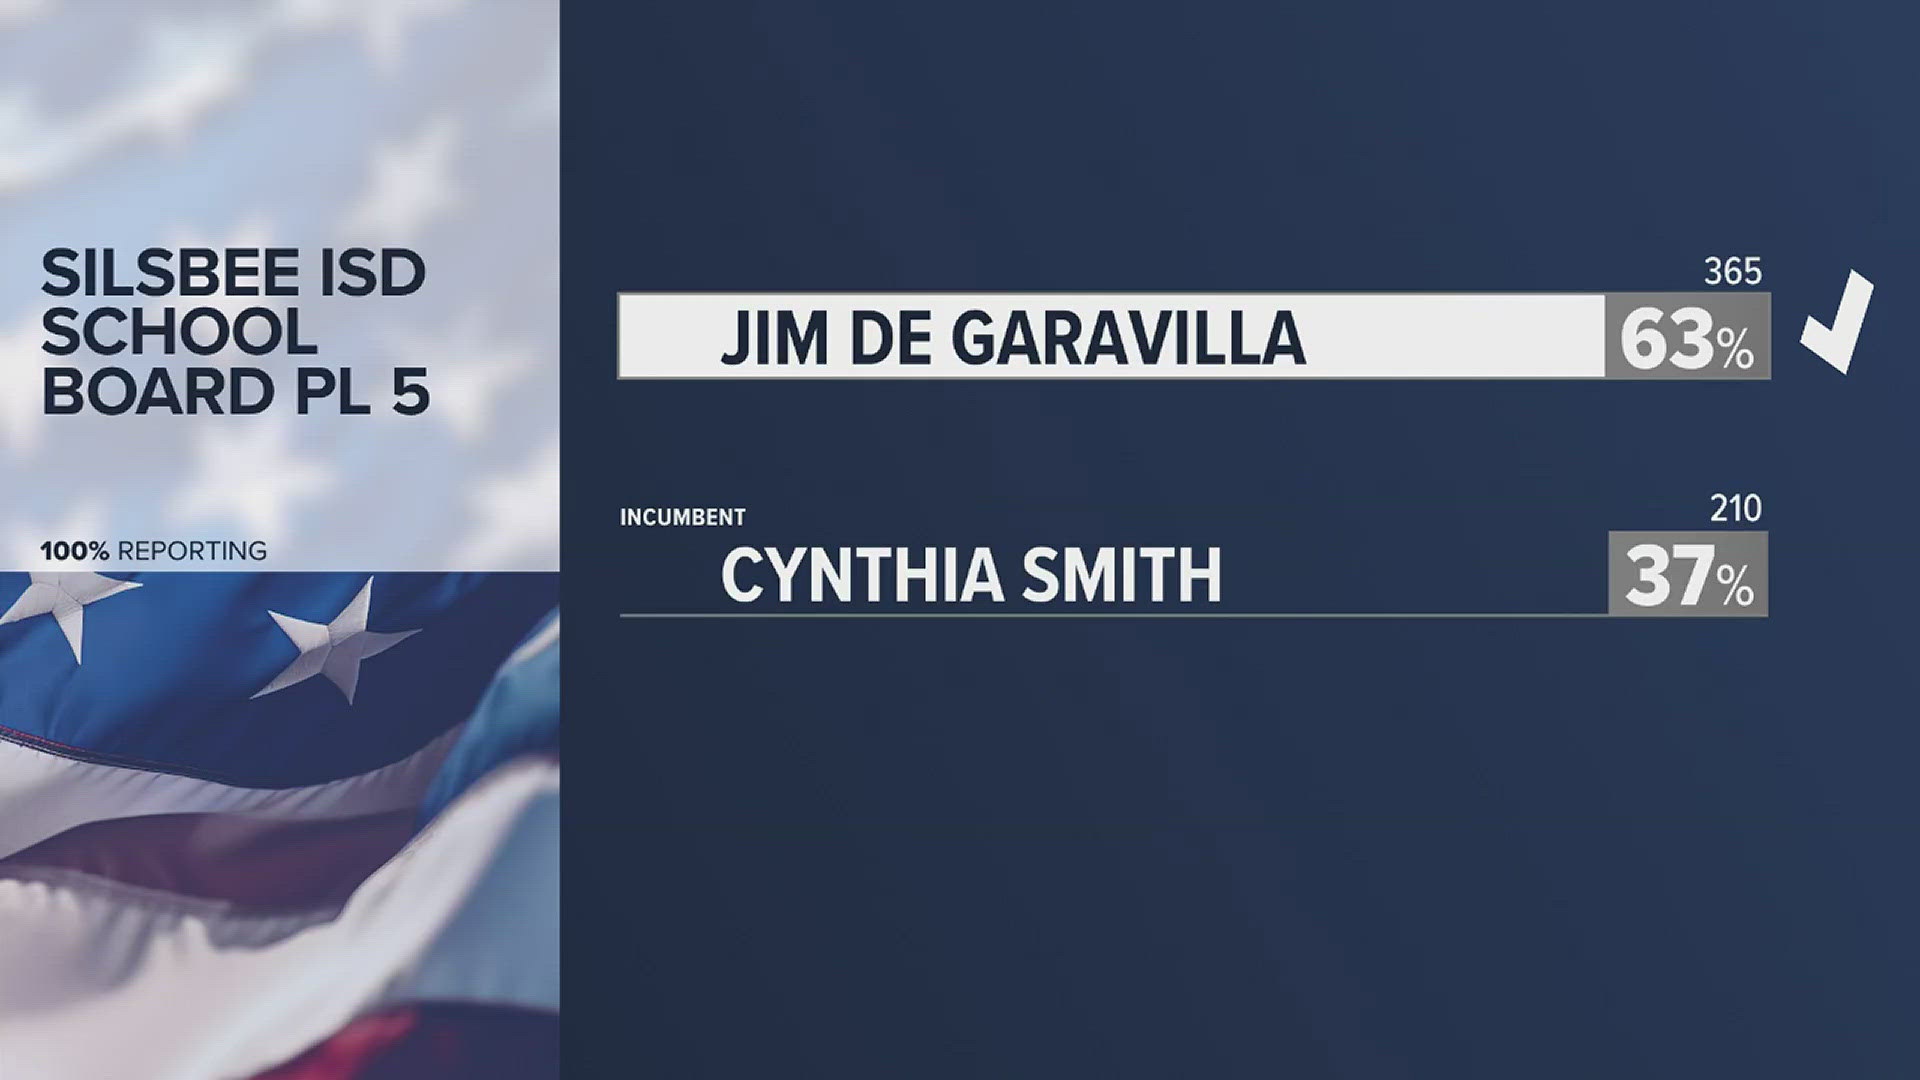 Jim De Garavilla wins with 63% of the vote